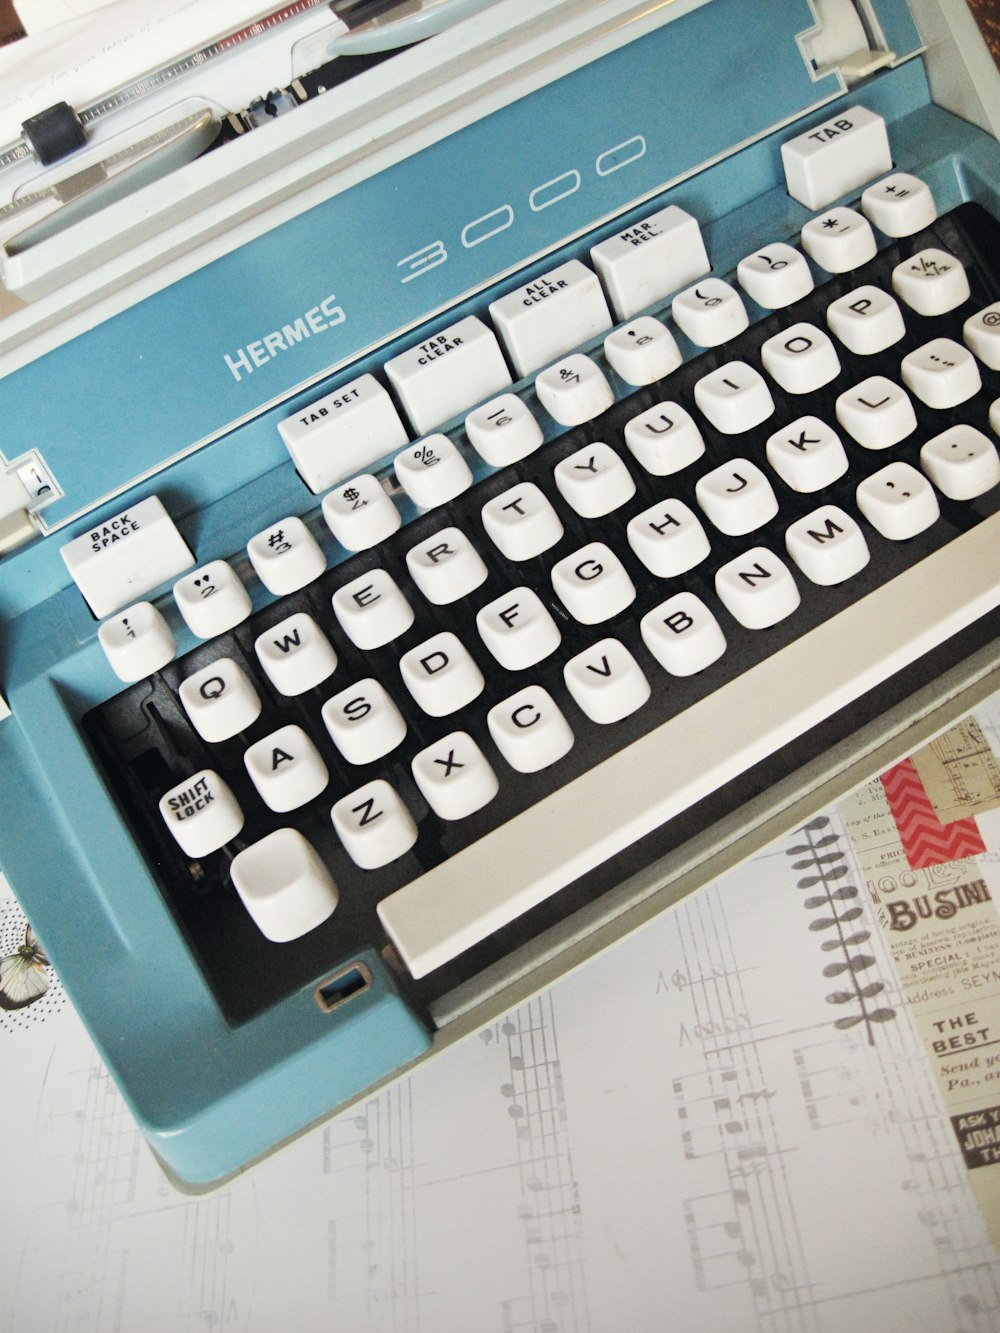 macchina da scrivere Hermes 3000 bianca e verde acqua su carta bianca